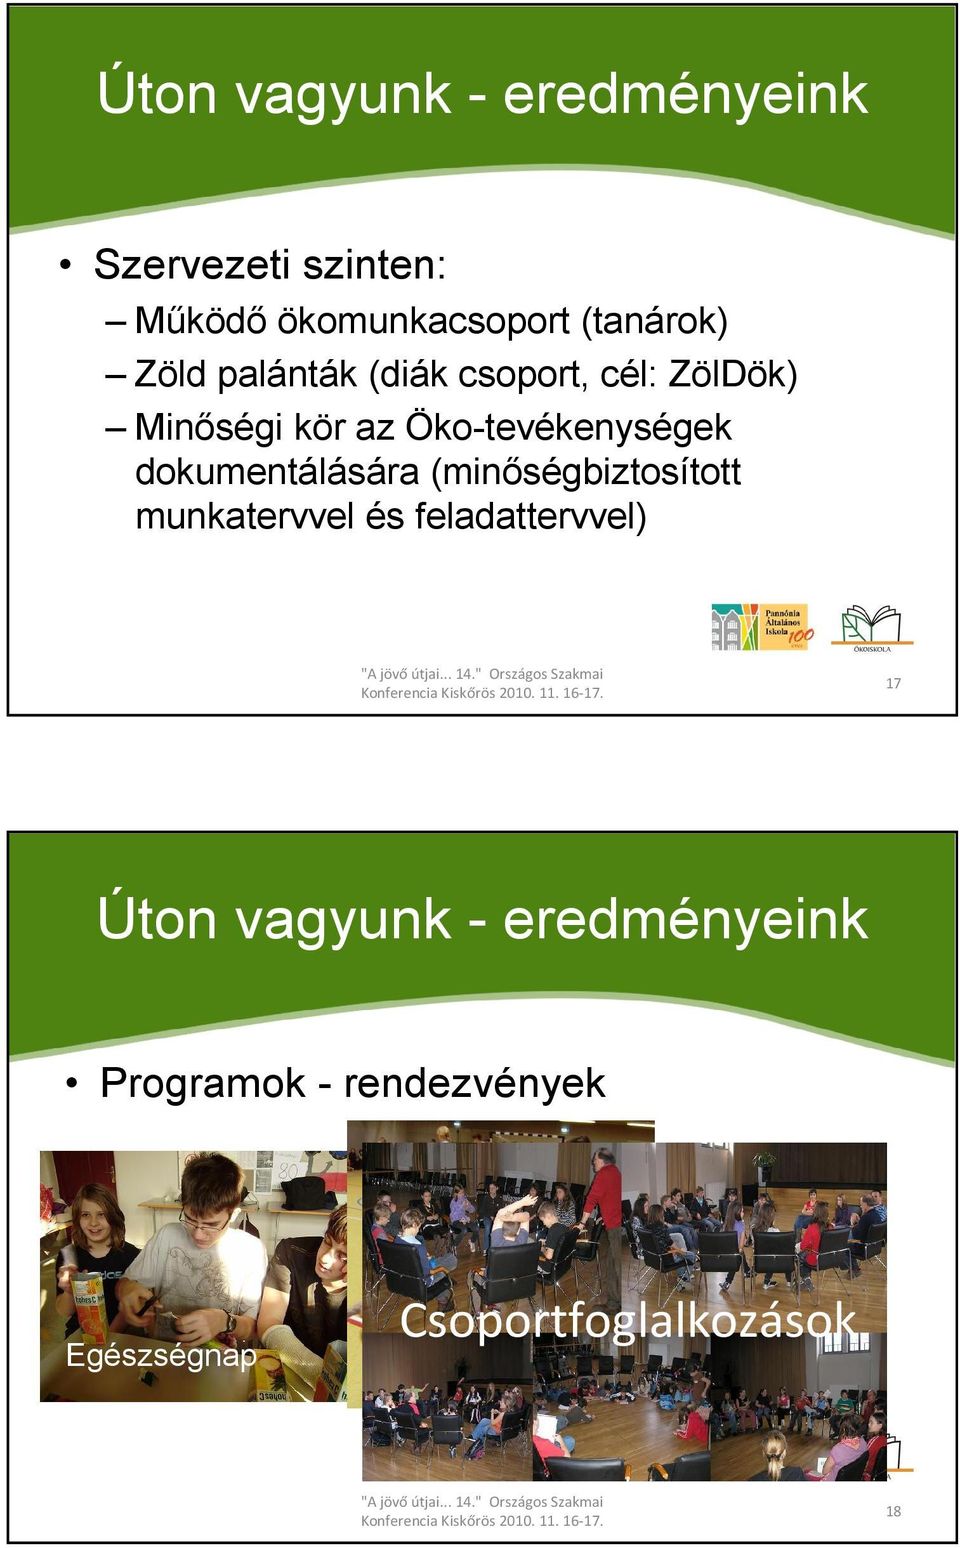 Öko-tevékenységek dokumentálására (minıségbiztosított munkatervvel és